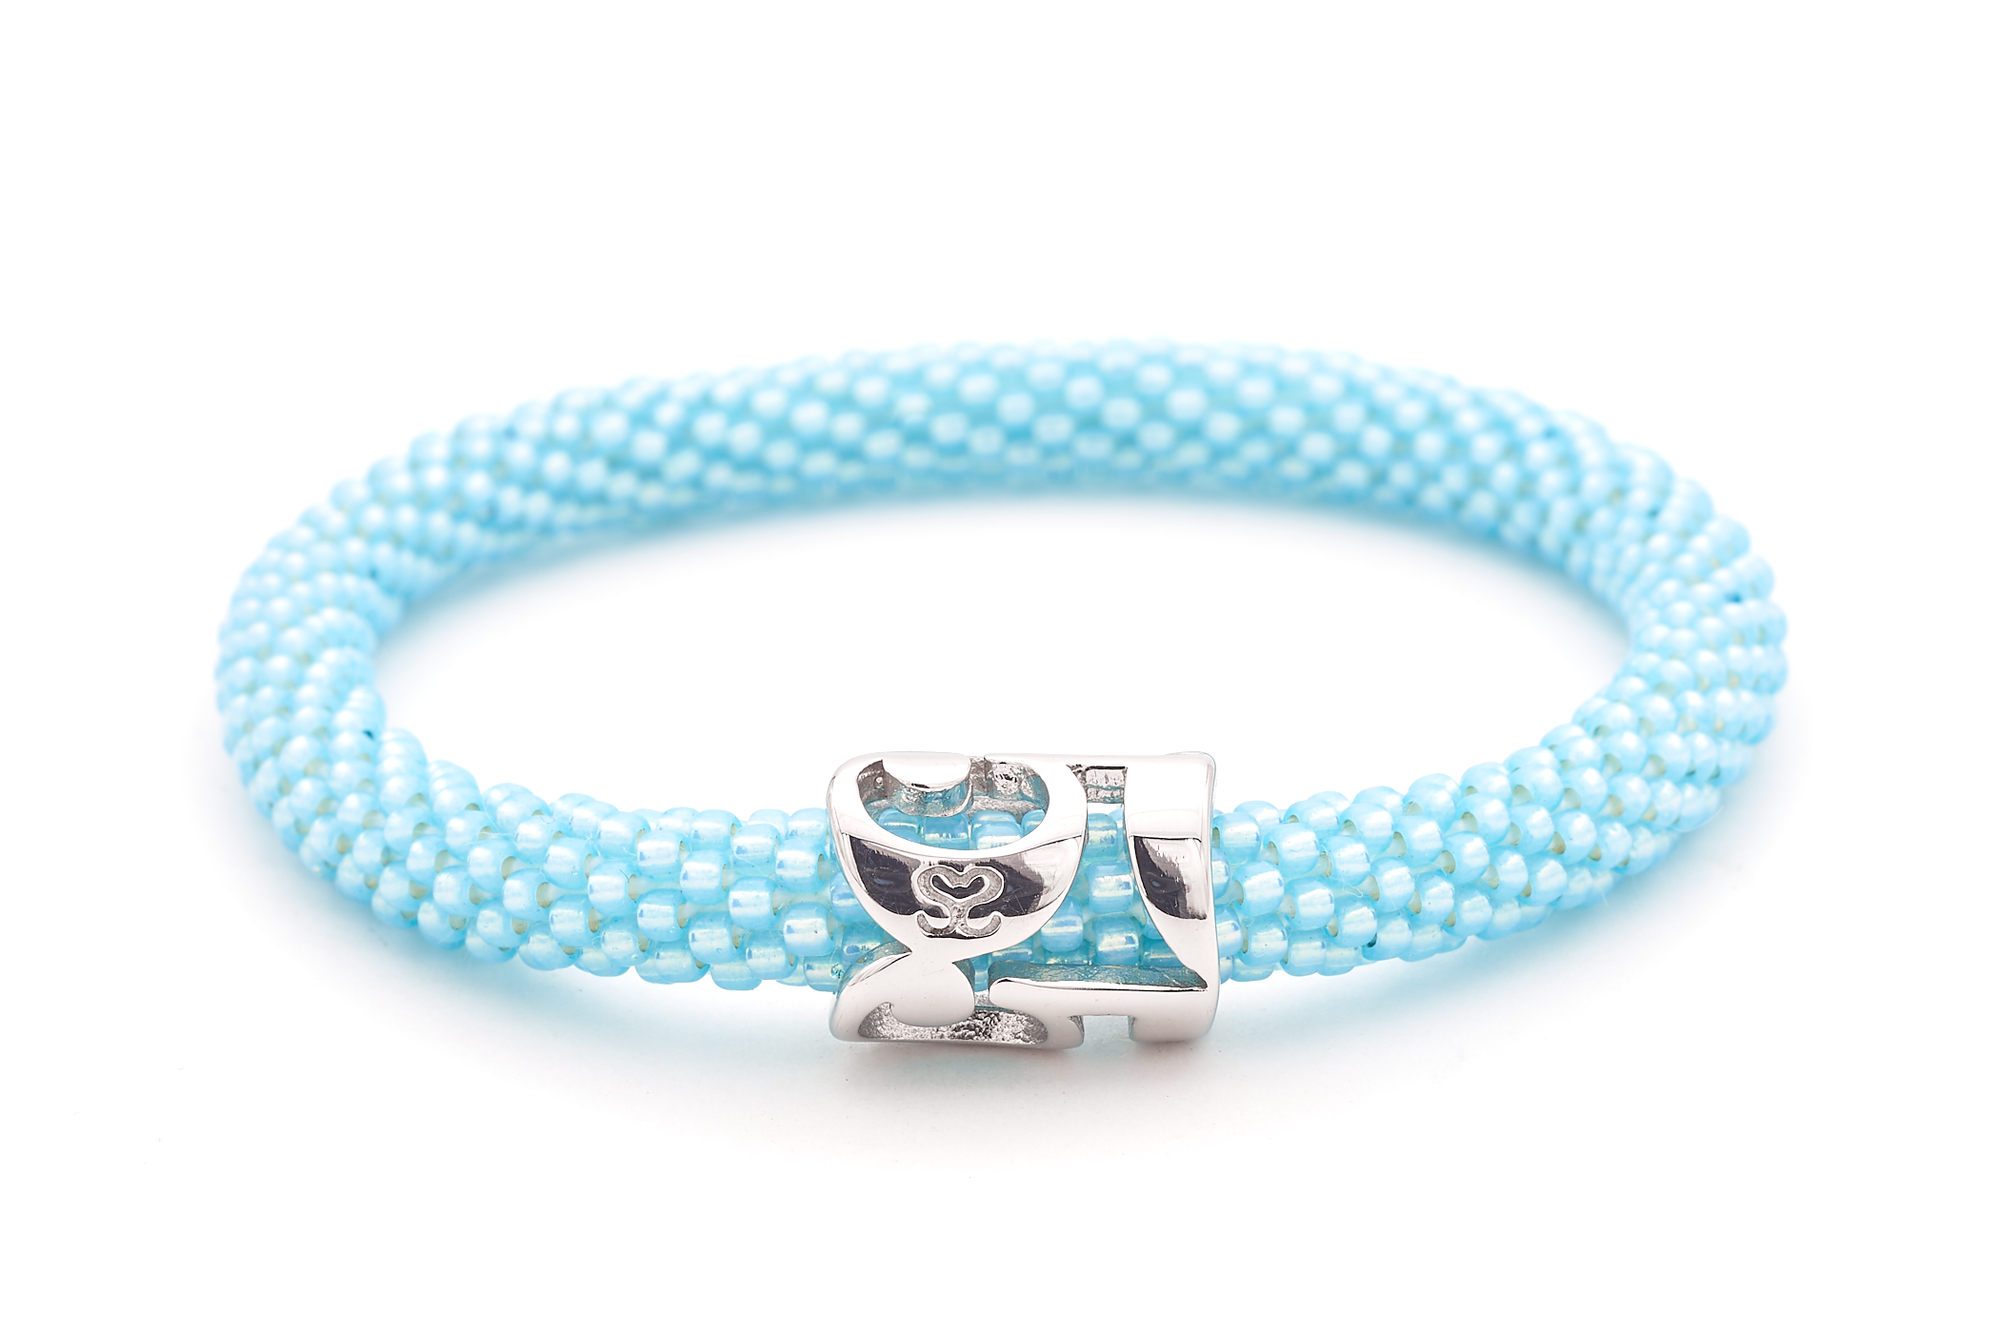 Sashka Co. Extended 8" Bracelet Pearl Light Blue / w Silver Charm 555 Angel Charm Bracelet - Extended 8"